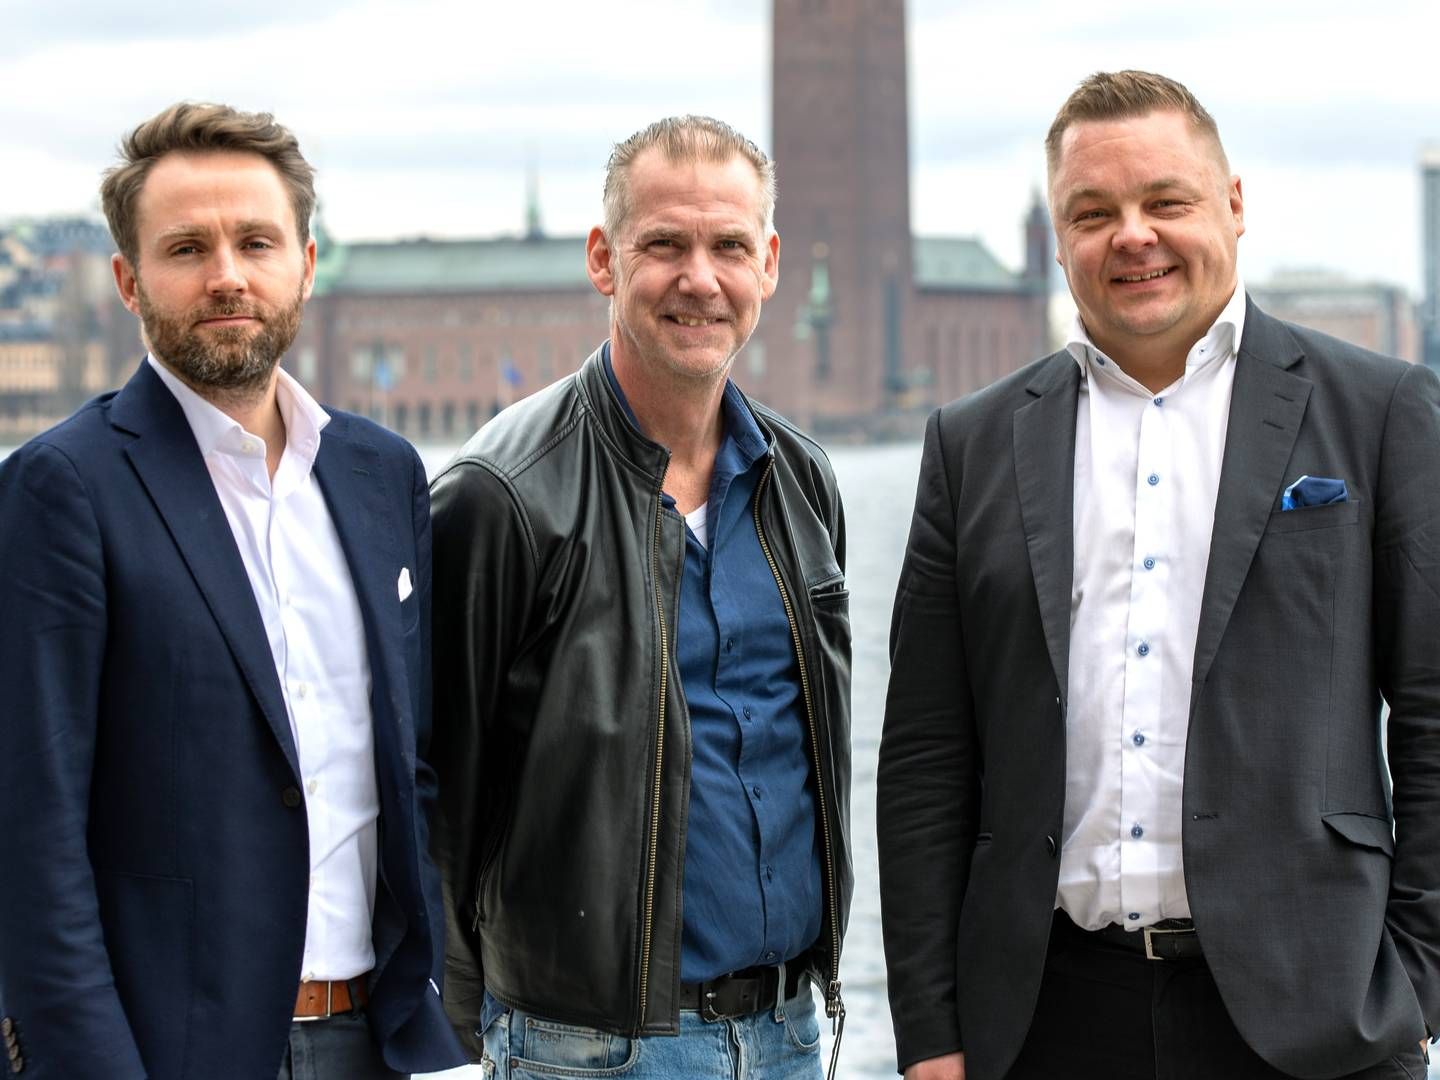 Retail United-direktør Andreas Broman (i midten) bliver nu en del af Wavecrest. Til venstre ses direktør Sune Nielsen, og til højre står M&A-chef Tero Ylönen.